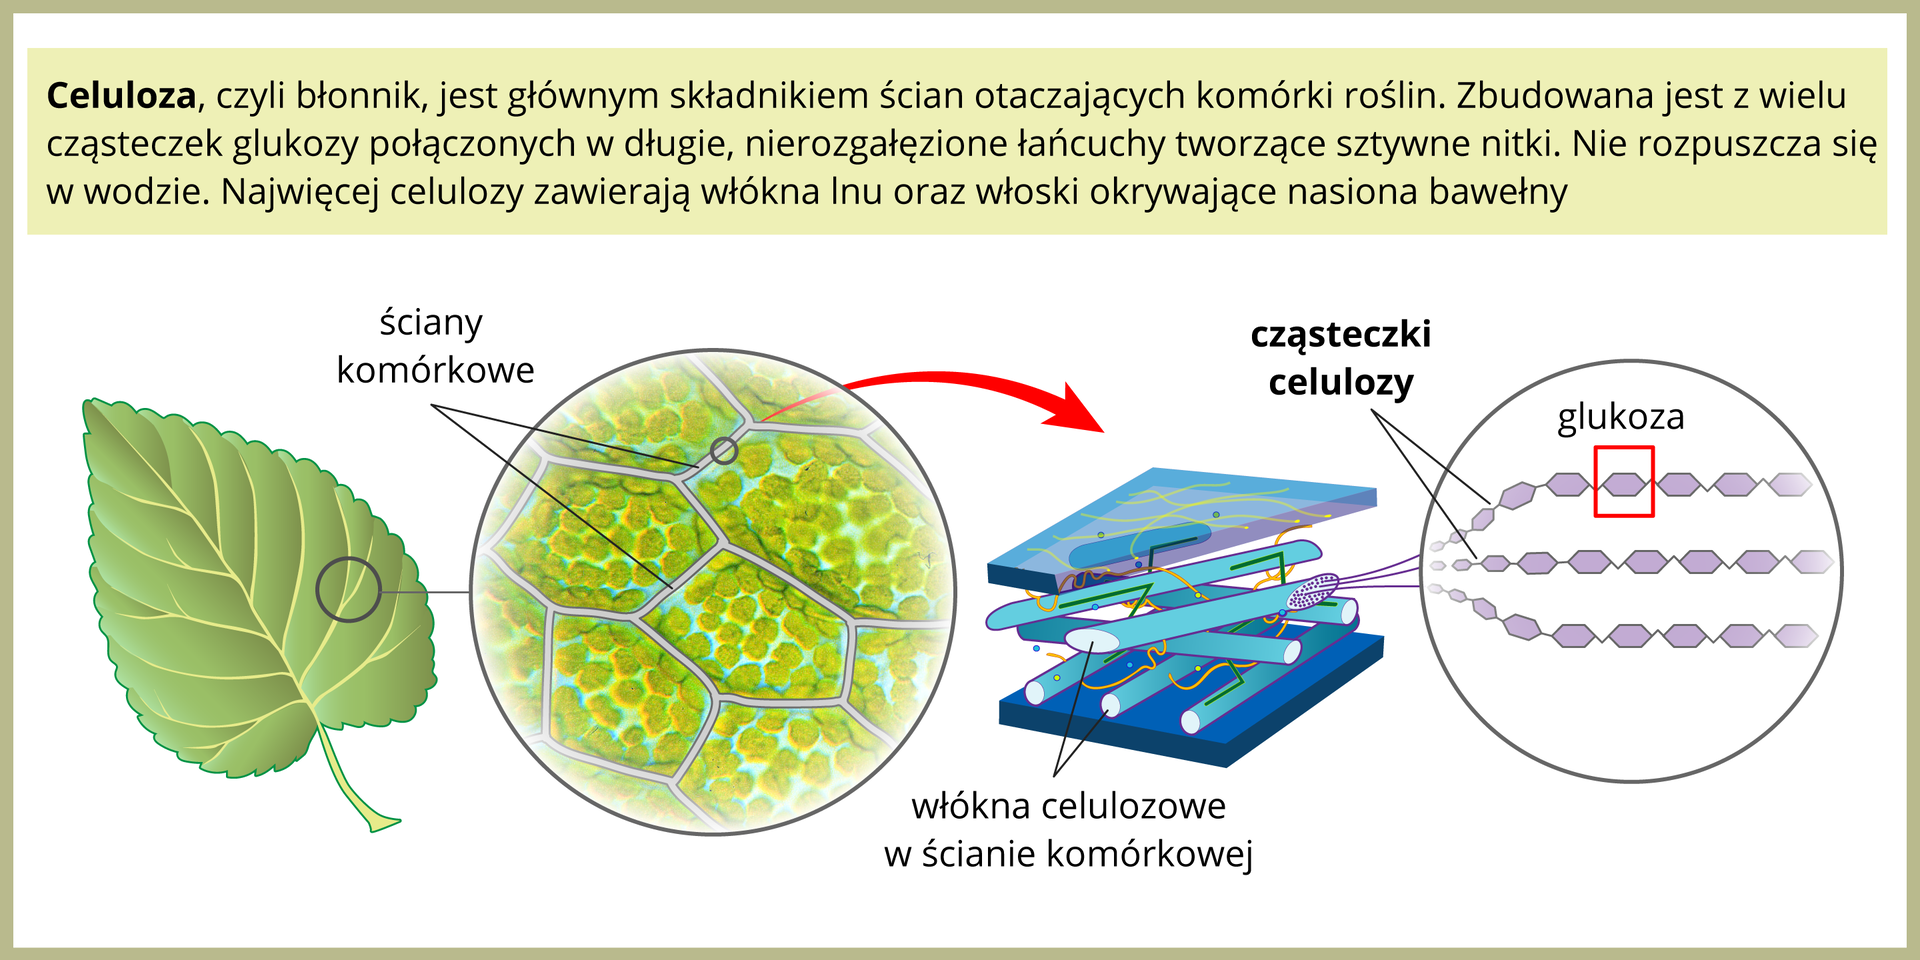 Ilustracja przedstawia po lewej zielony liść. W prawo znajduje się powiększenie kilku komórek liścia, oddzielonych od siebie białymi ścianami. Czerwona strzałka prowadzi w prawo do powiększenia ściany komórkowej, złożonej z błękitnych włókien celulozy, ułożonych warstwami na przemian. Dalej po prawej znajduje się powiększenie cząsteczki celulozy, zbudowanej z wielu fioletowych sześciokątów, czyli cząsteczek glukozy.